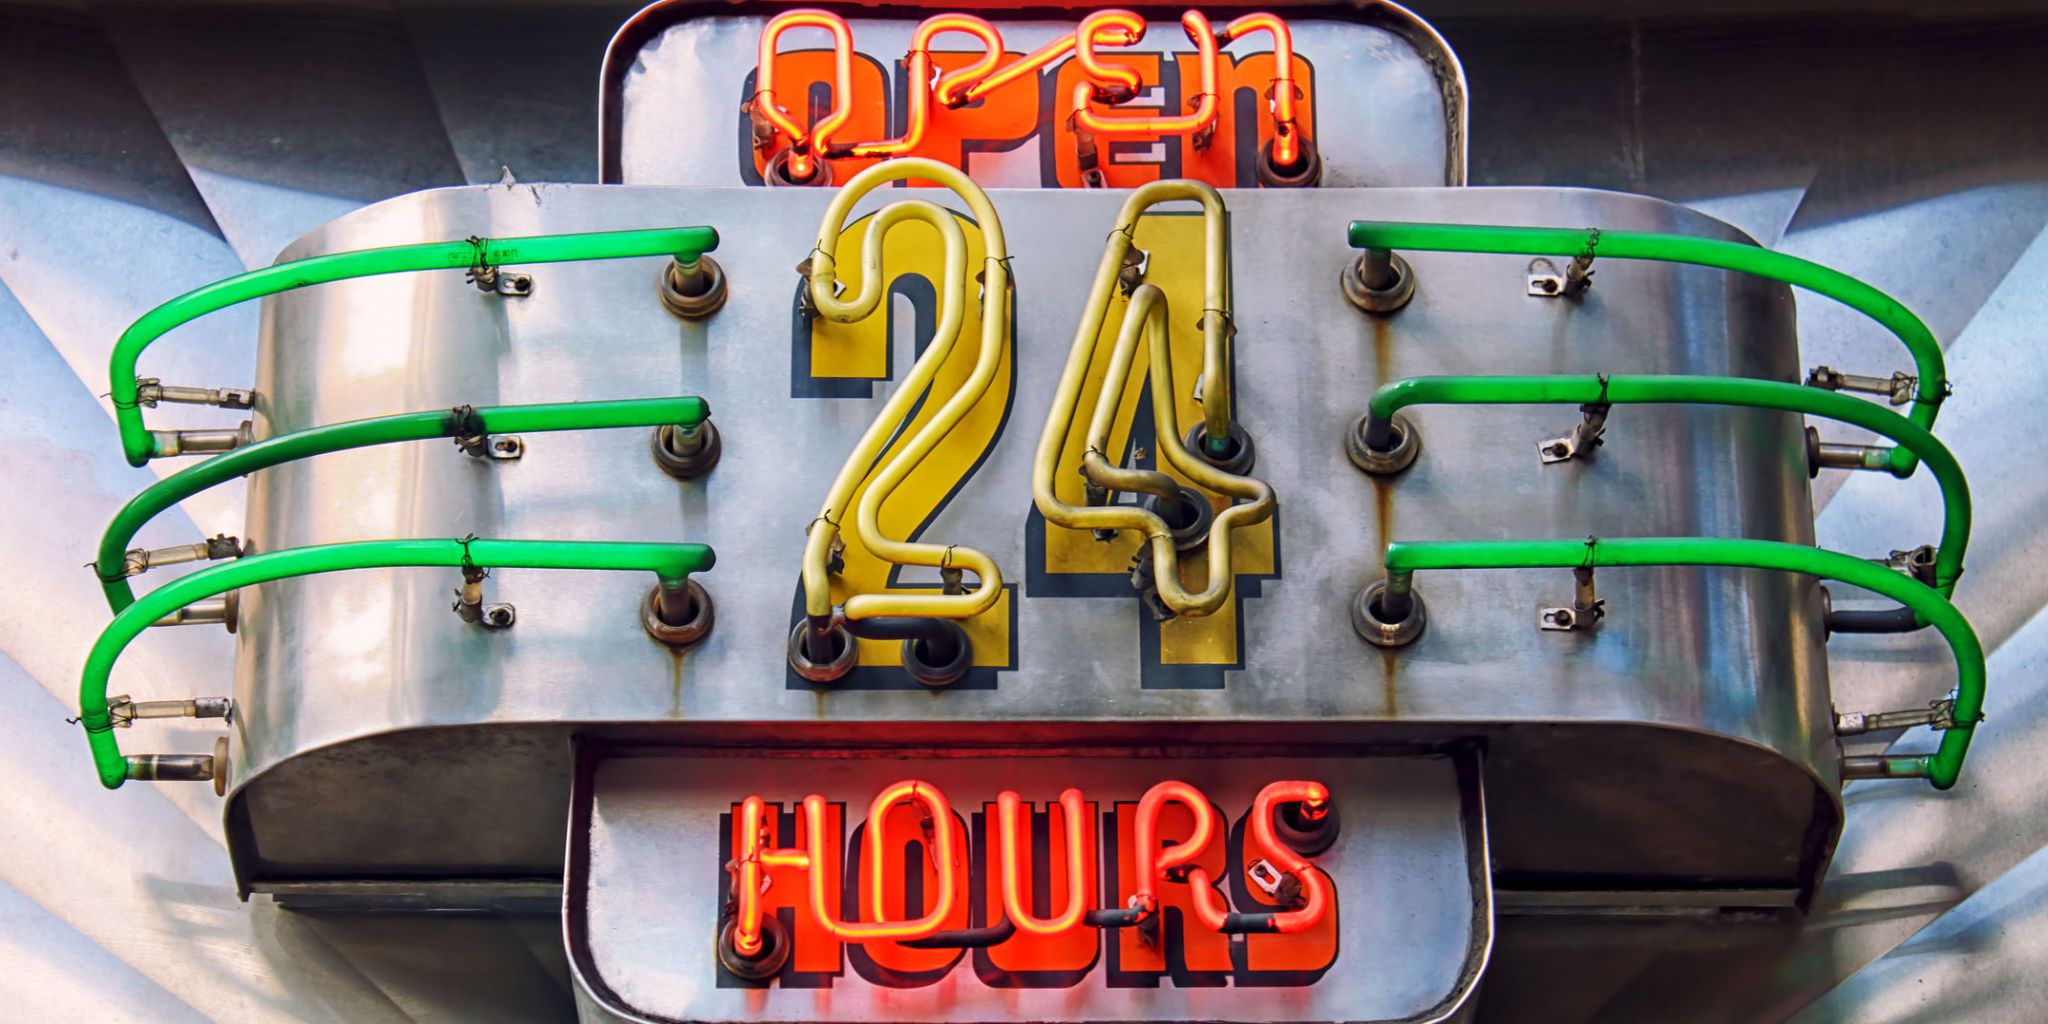 24 hour restaurants brighton mi